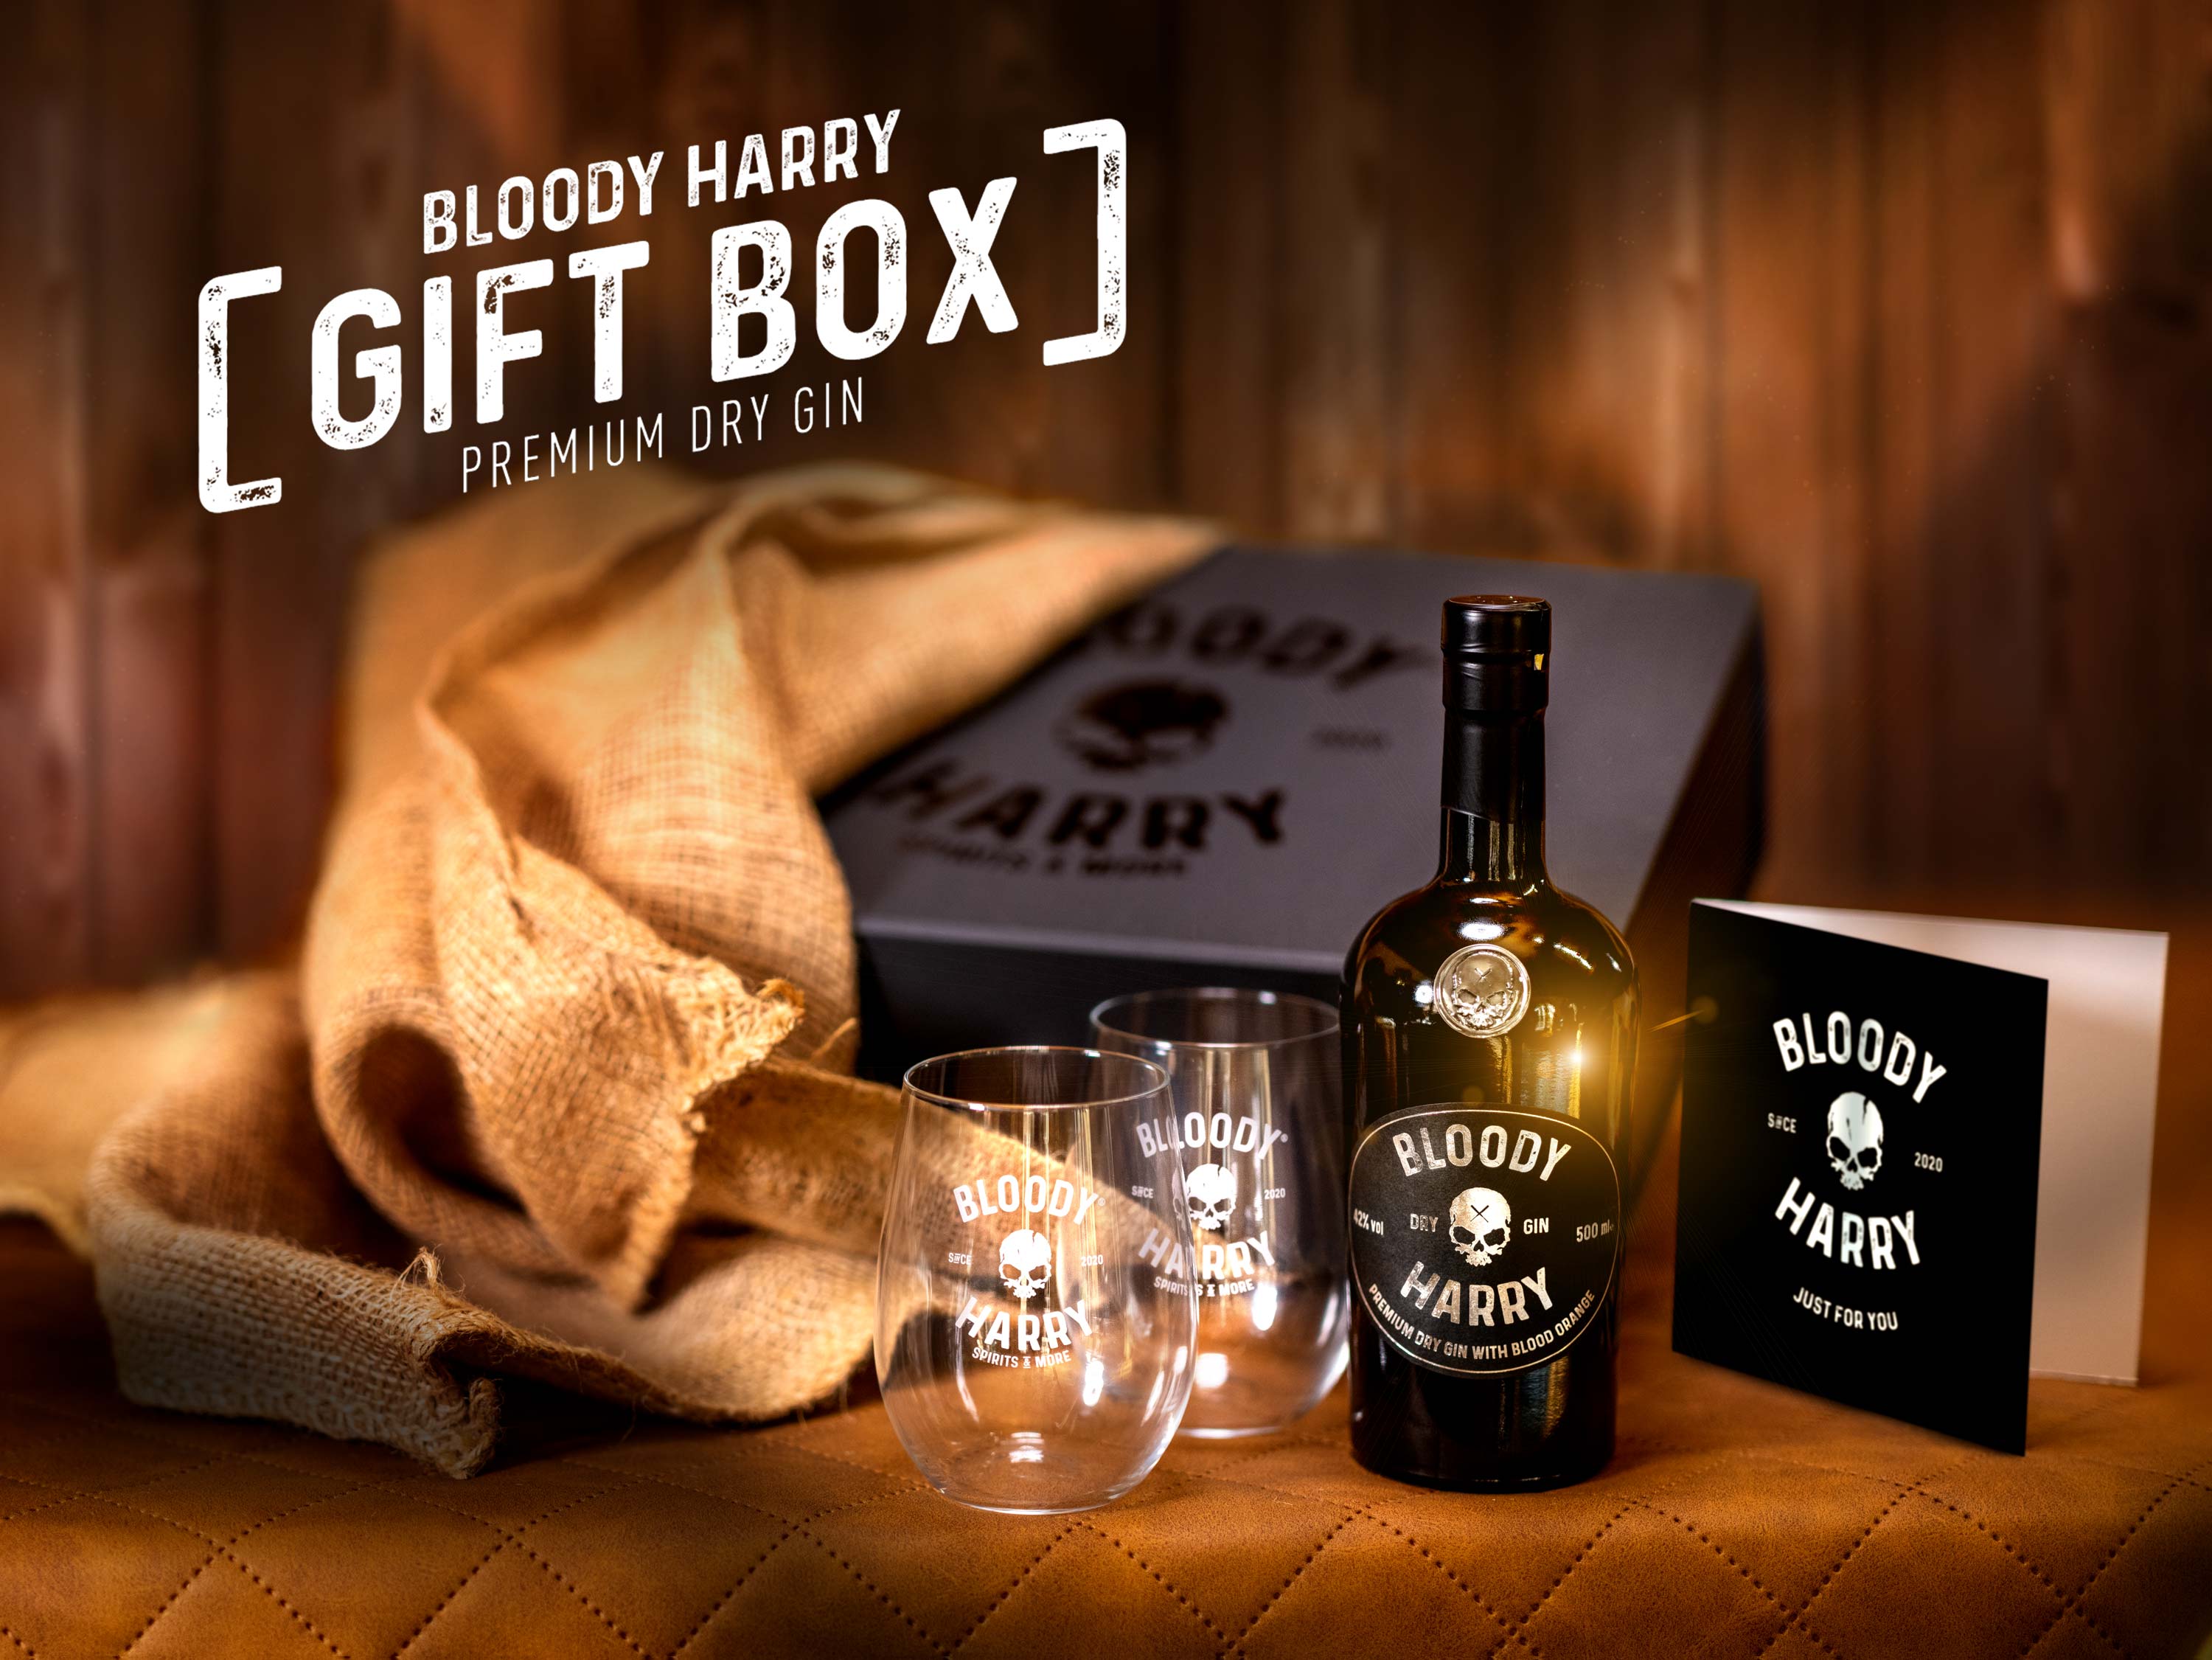 BLOODY HARRY Geschenk Box Premium Dry Gin